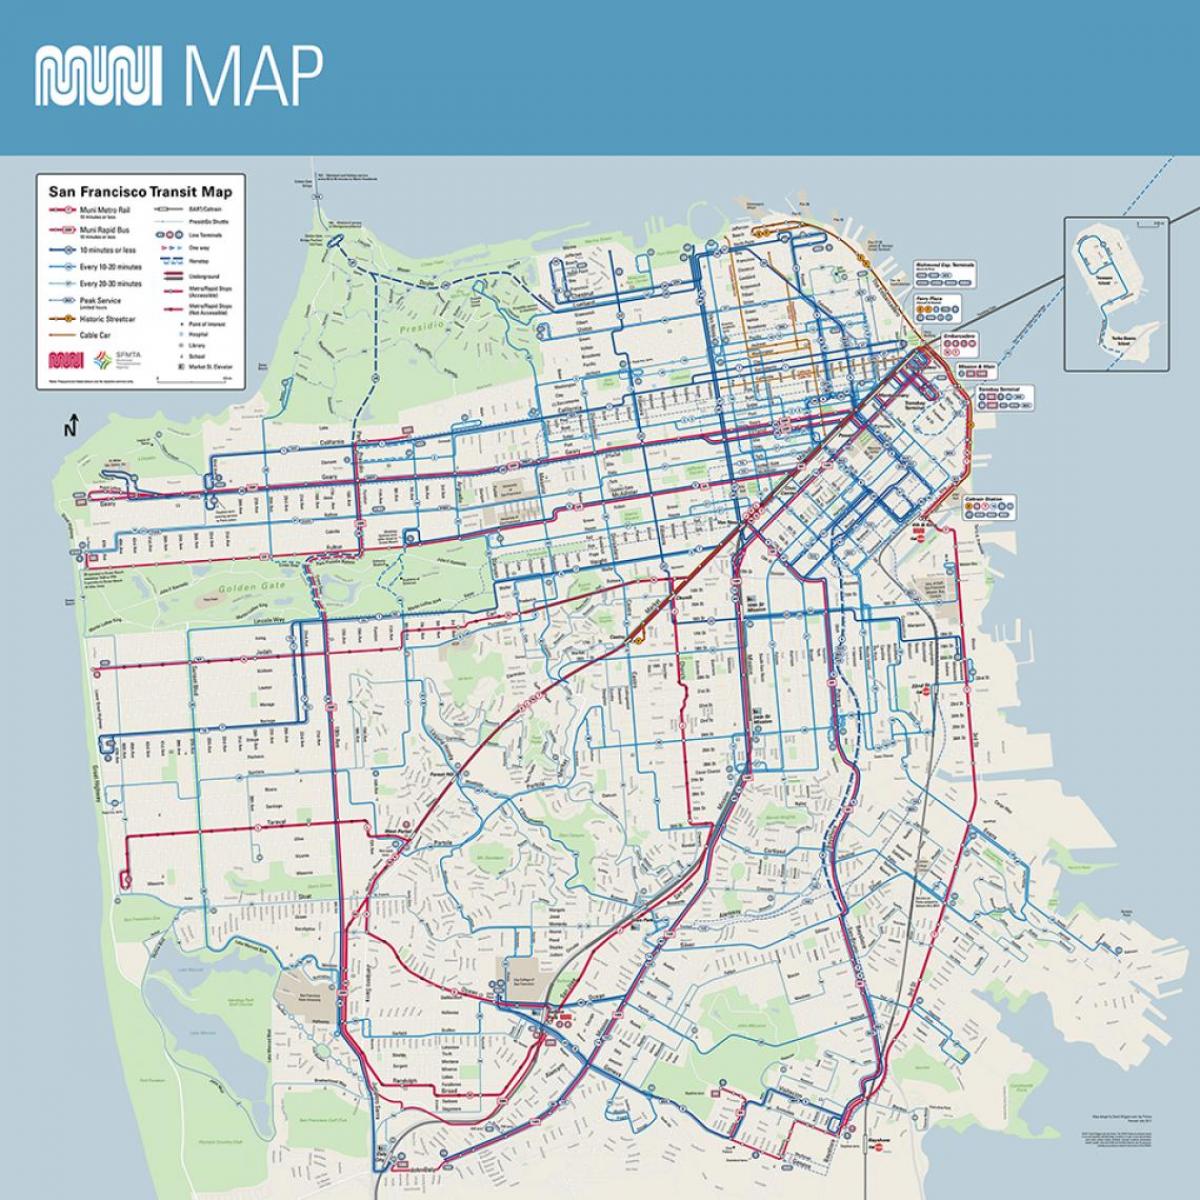 muni mapa de San Francisco, ca